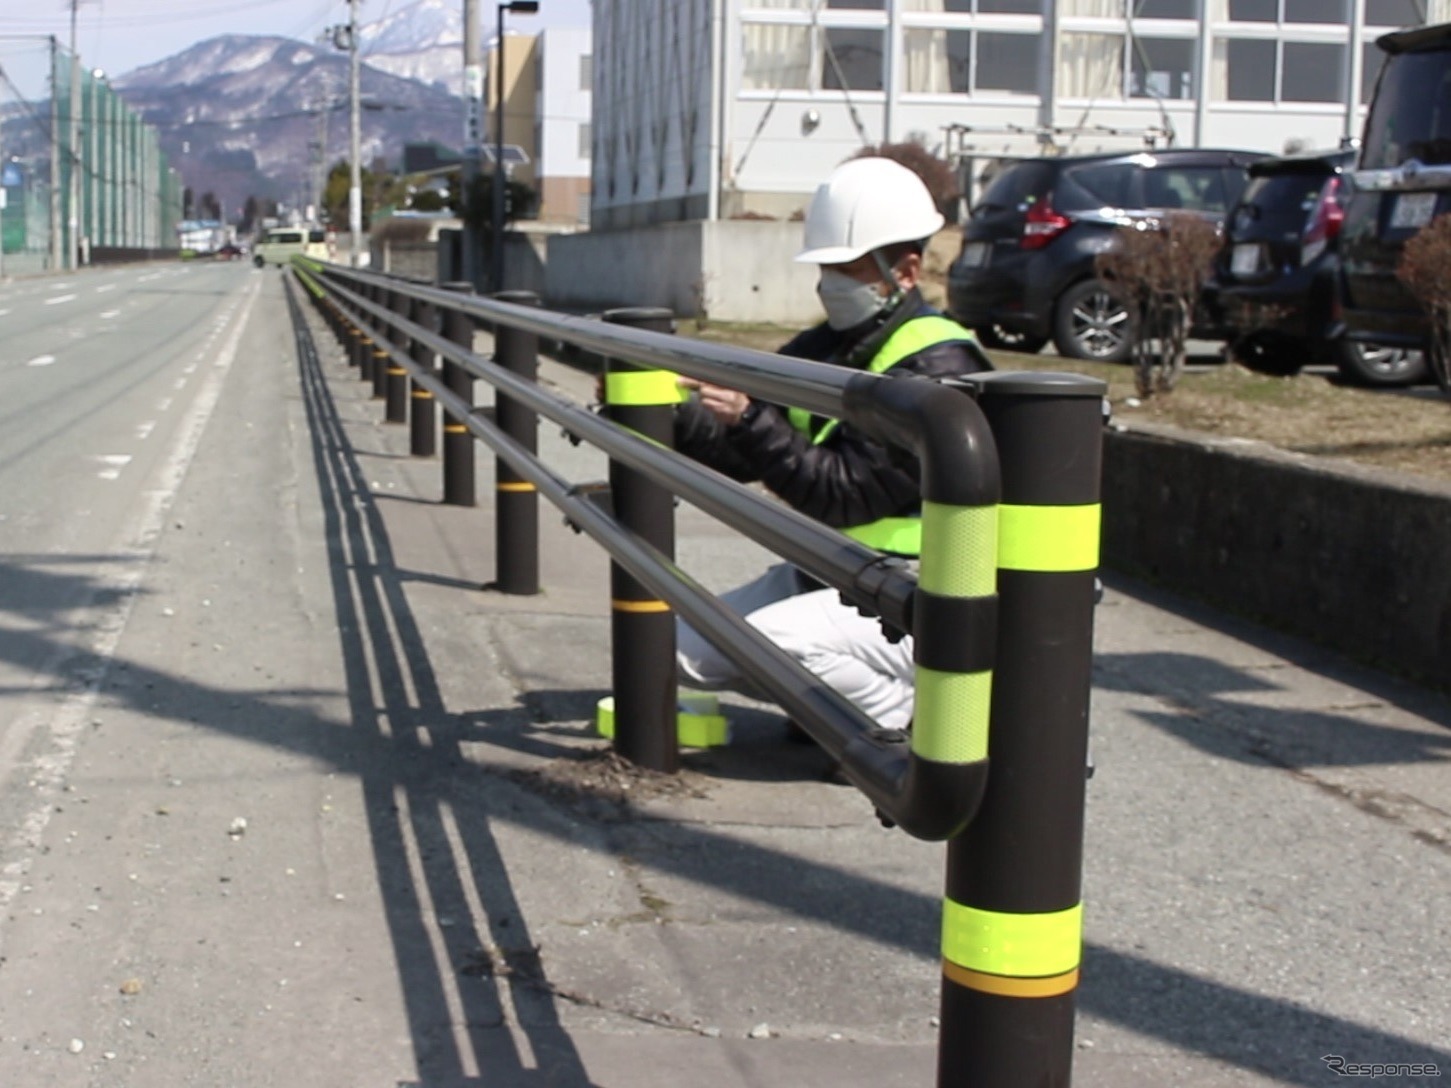 山形県東根市立東根中部小学校周辺通学路で、ガードレールへの反射材追加取り付け